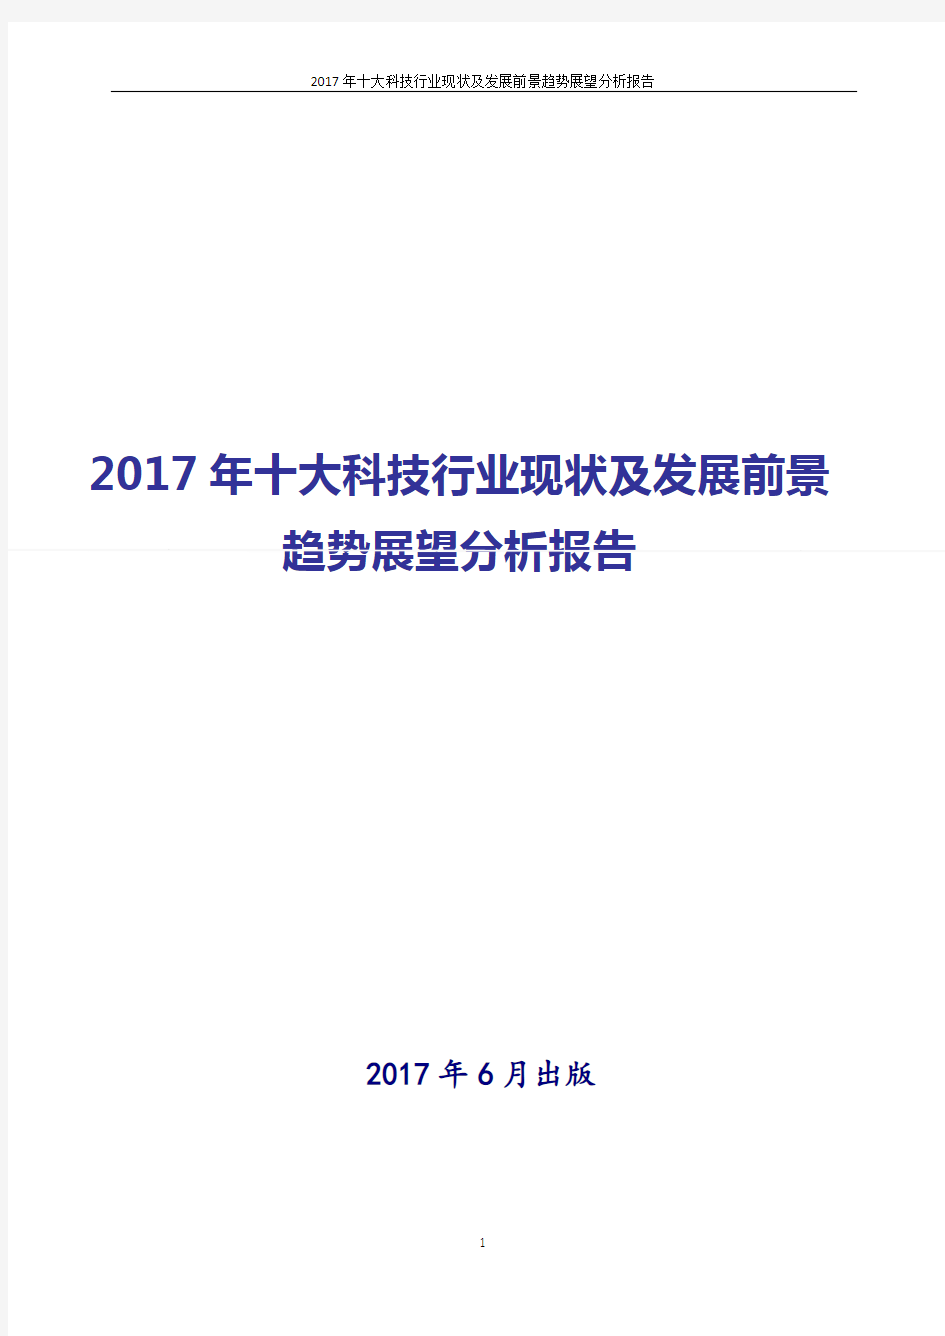 中国十大科技行业发展分析报告2017